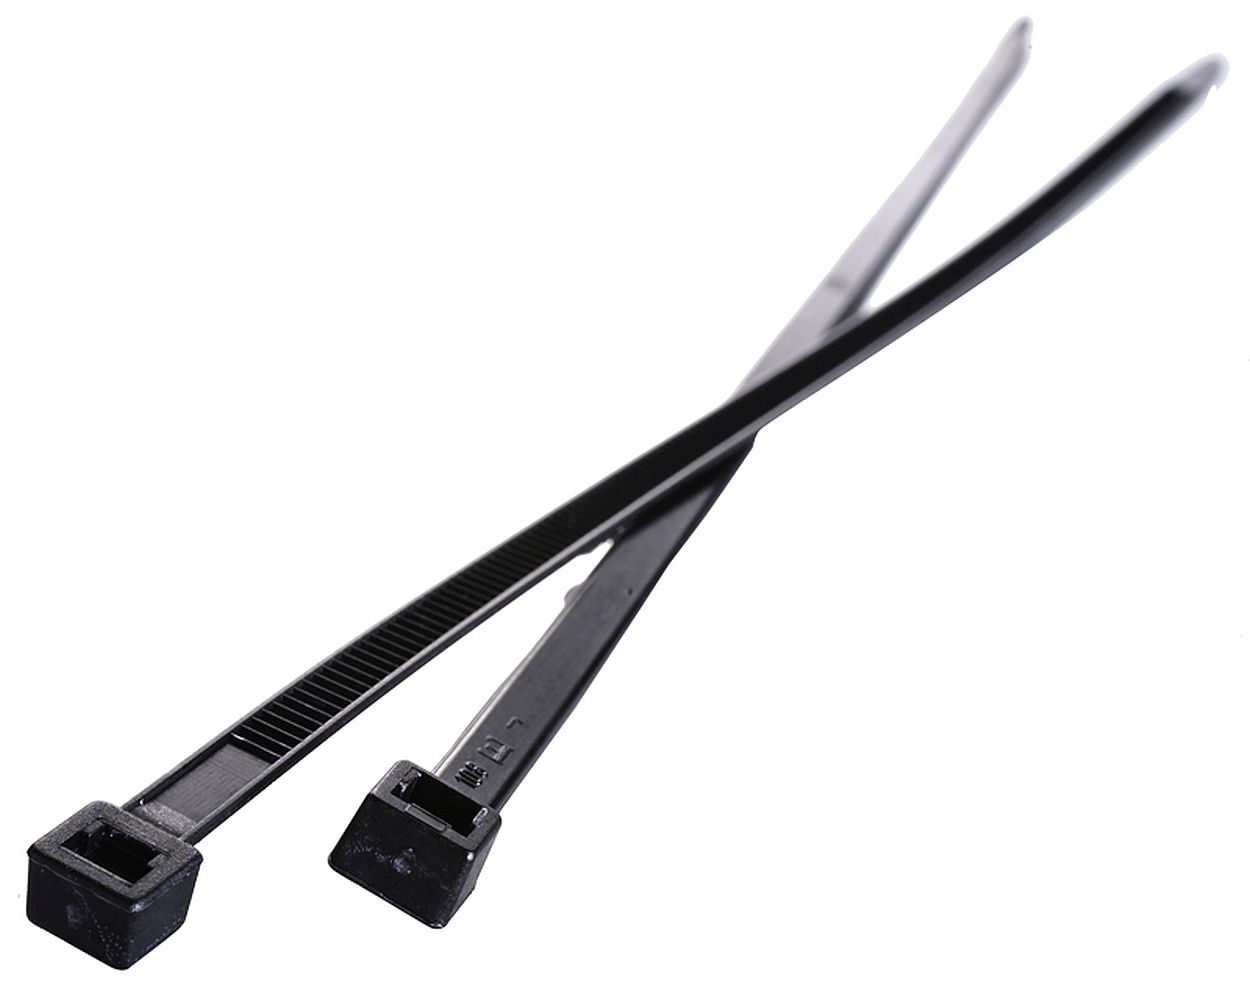 Admiral Cable Wrap Kabelbinder 26 cm braun (5 Stück) kaufen?